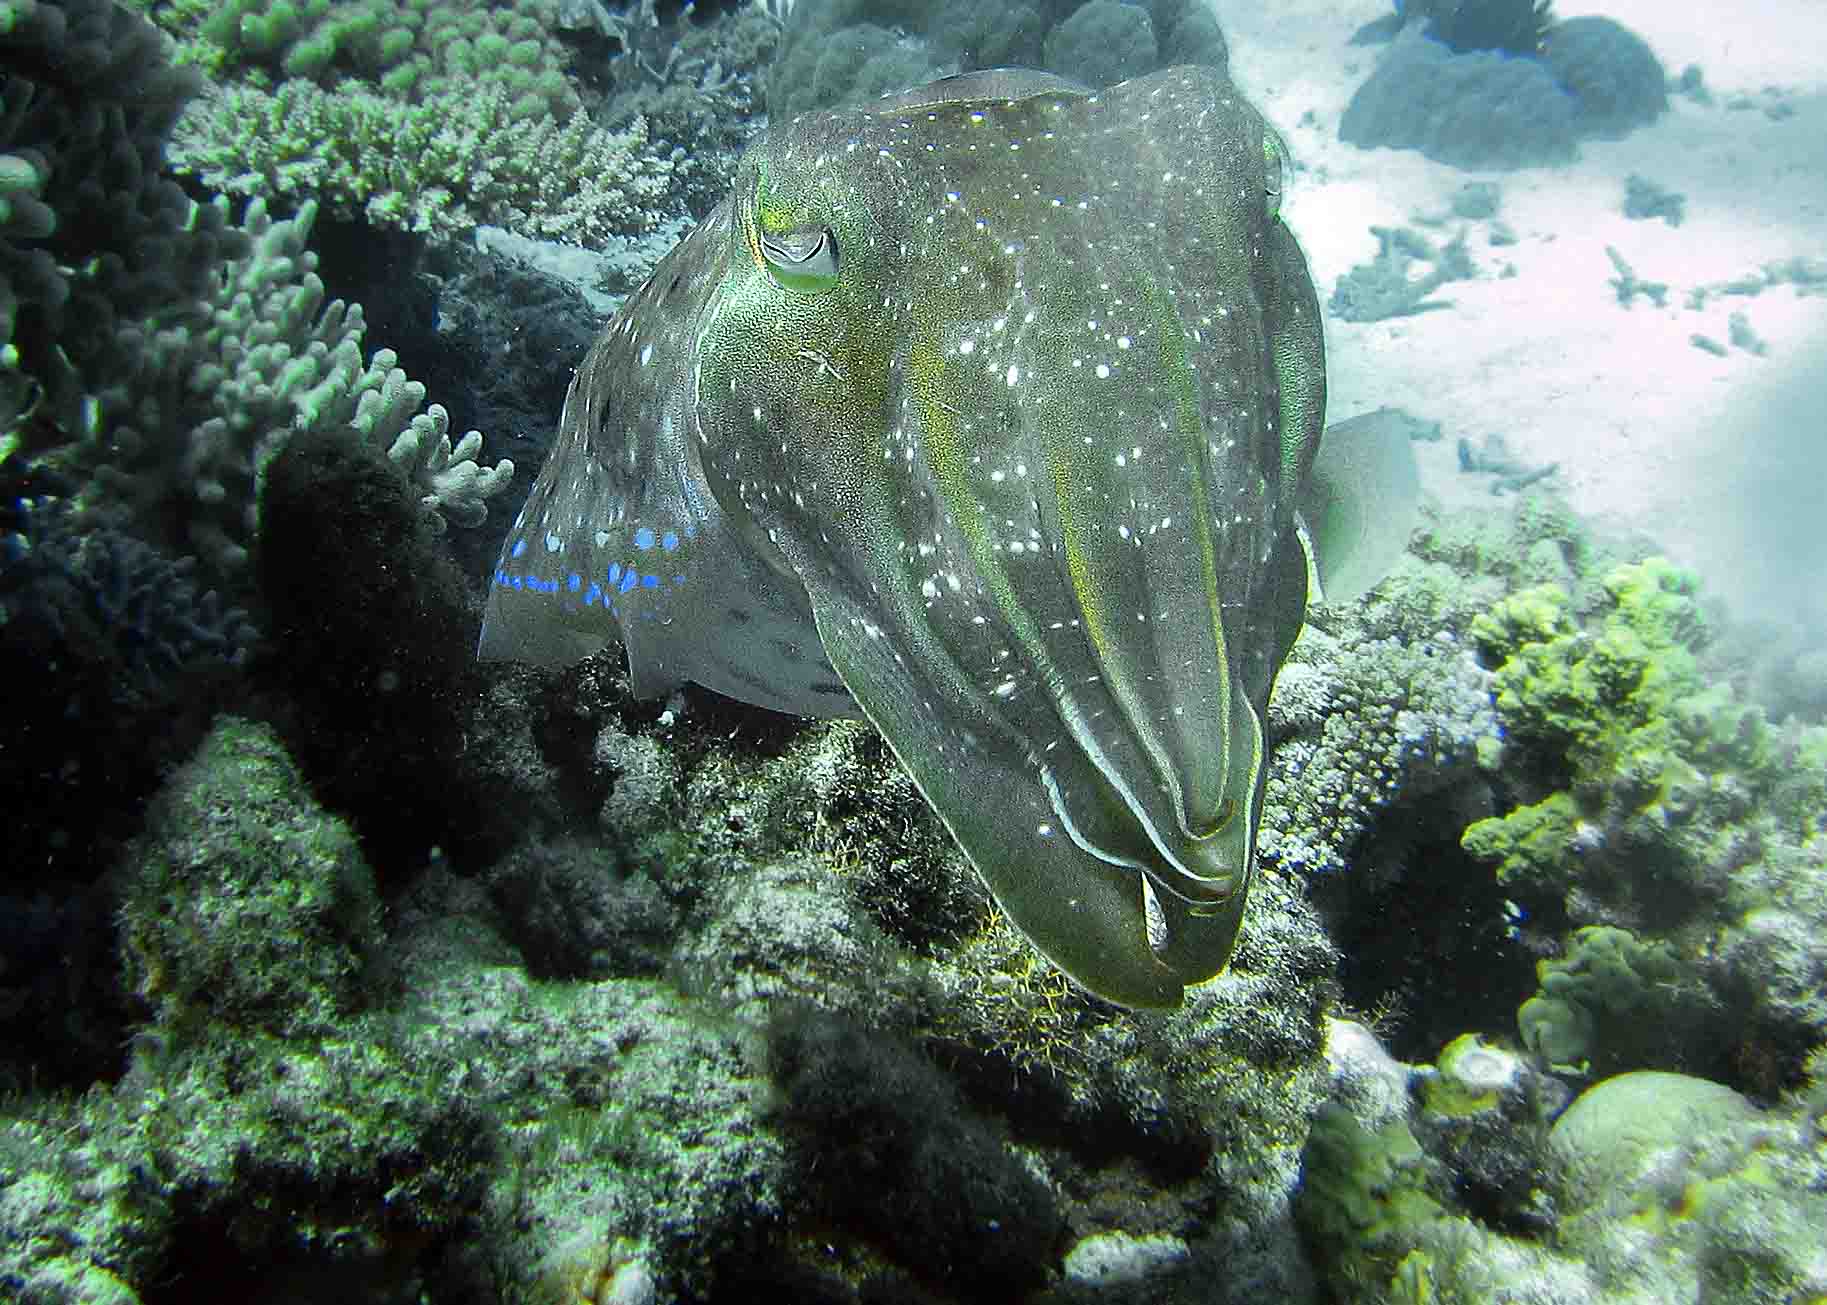 Cuttlefish off Cairns